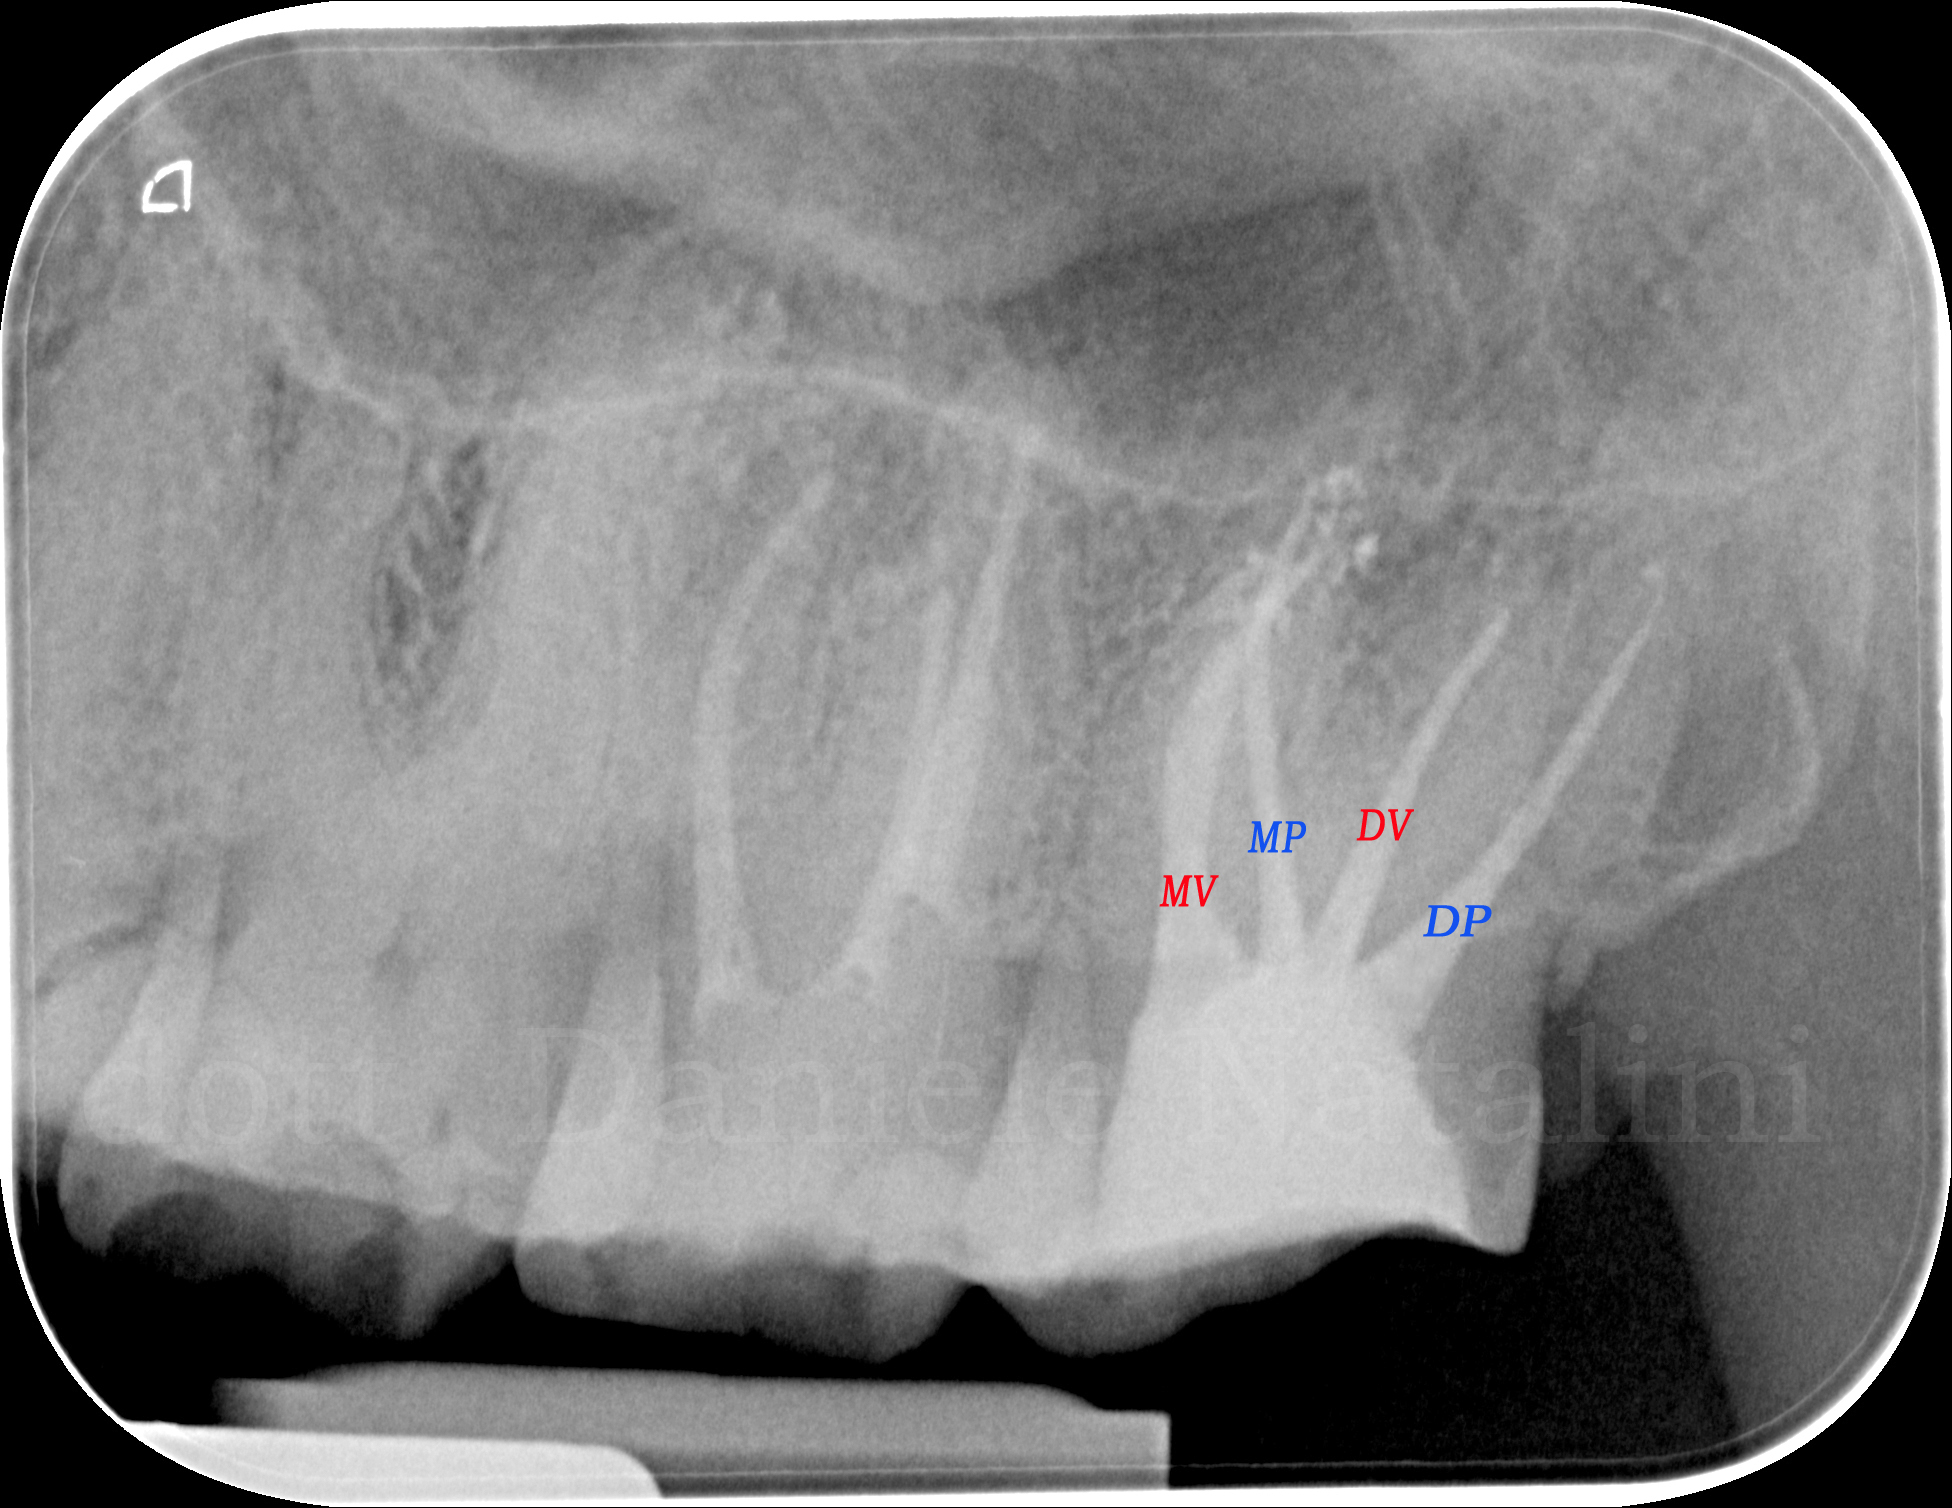 Trattamento endodontico di un ottavo superiore con quattro radici e quattro canali Dr. Natalini - fig. 6